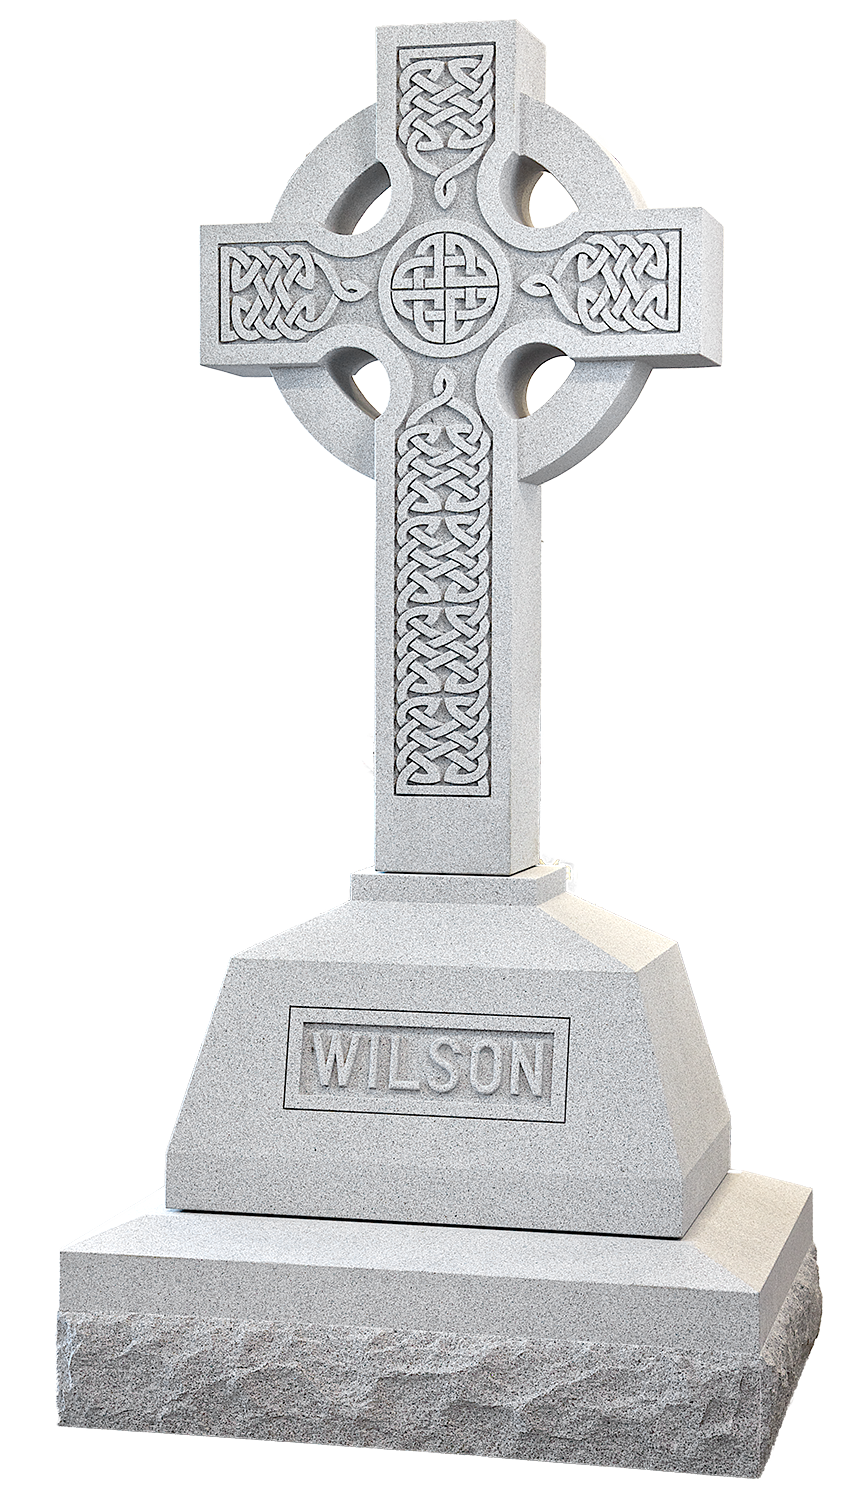 headstone clipart cross design